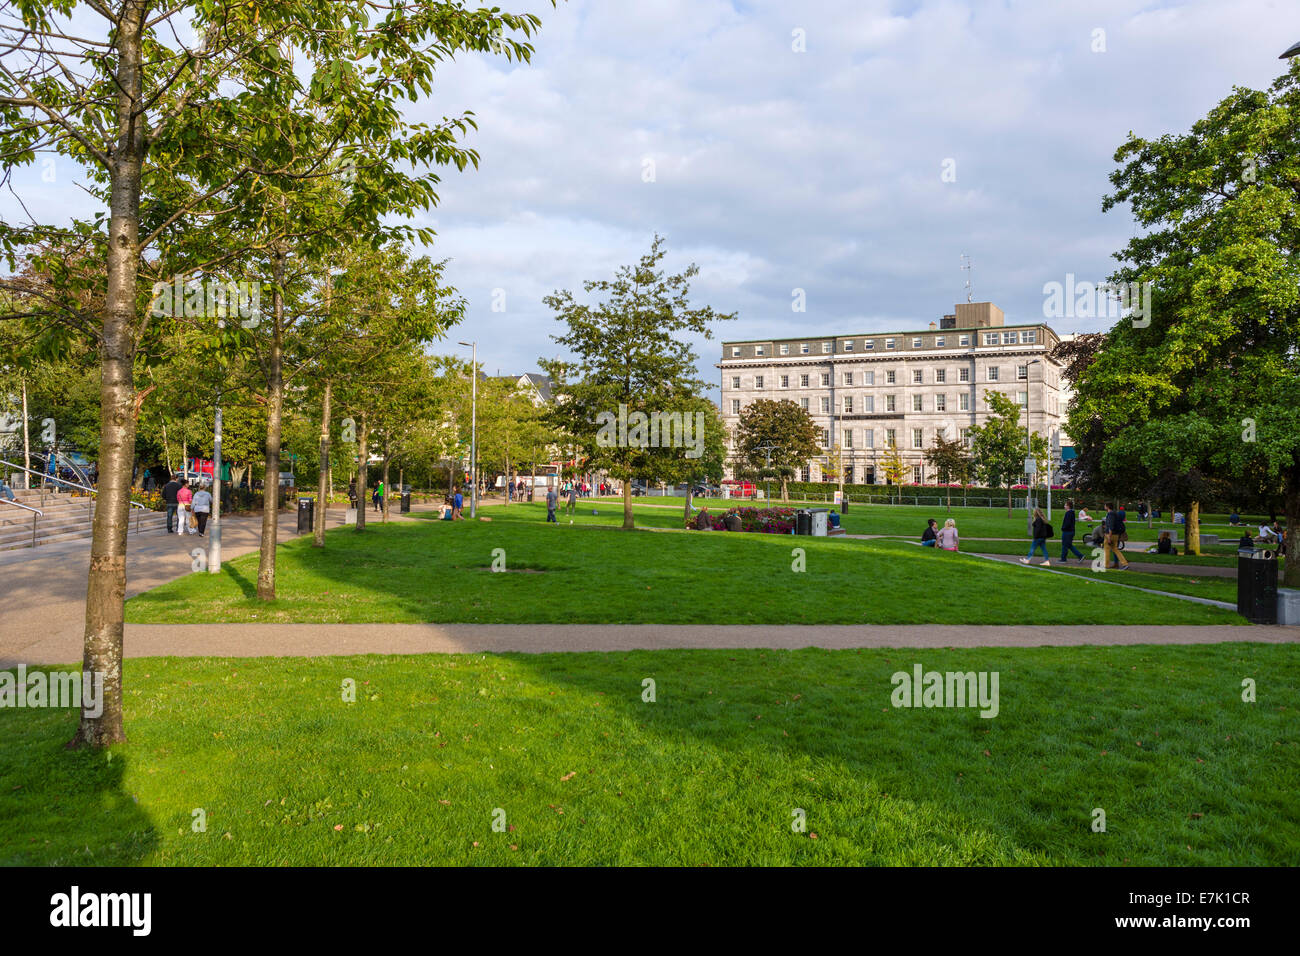 Temprano por la tarde en la plaza Eyre Square, mirando hacia el Hotel Meyrick, Galway, Condado de Galway, República de Irlanda Foto de stock